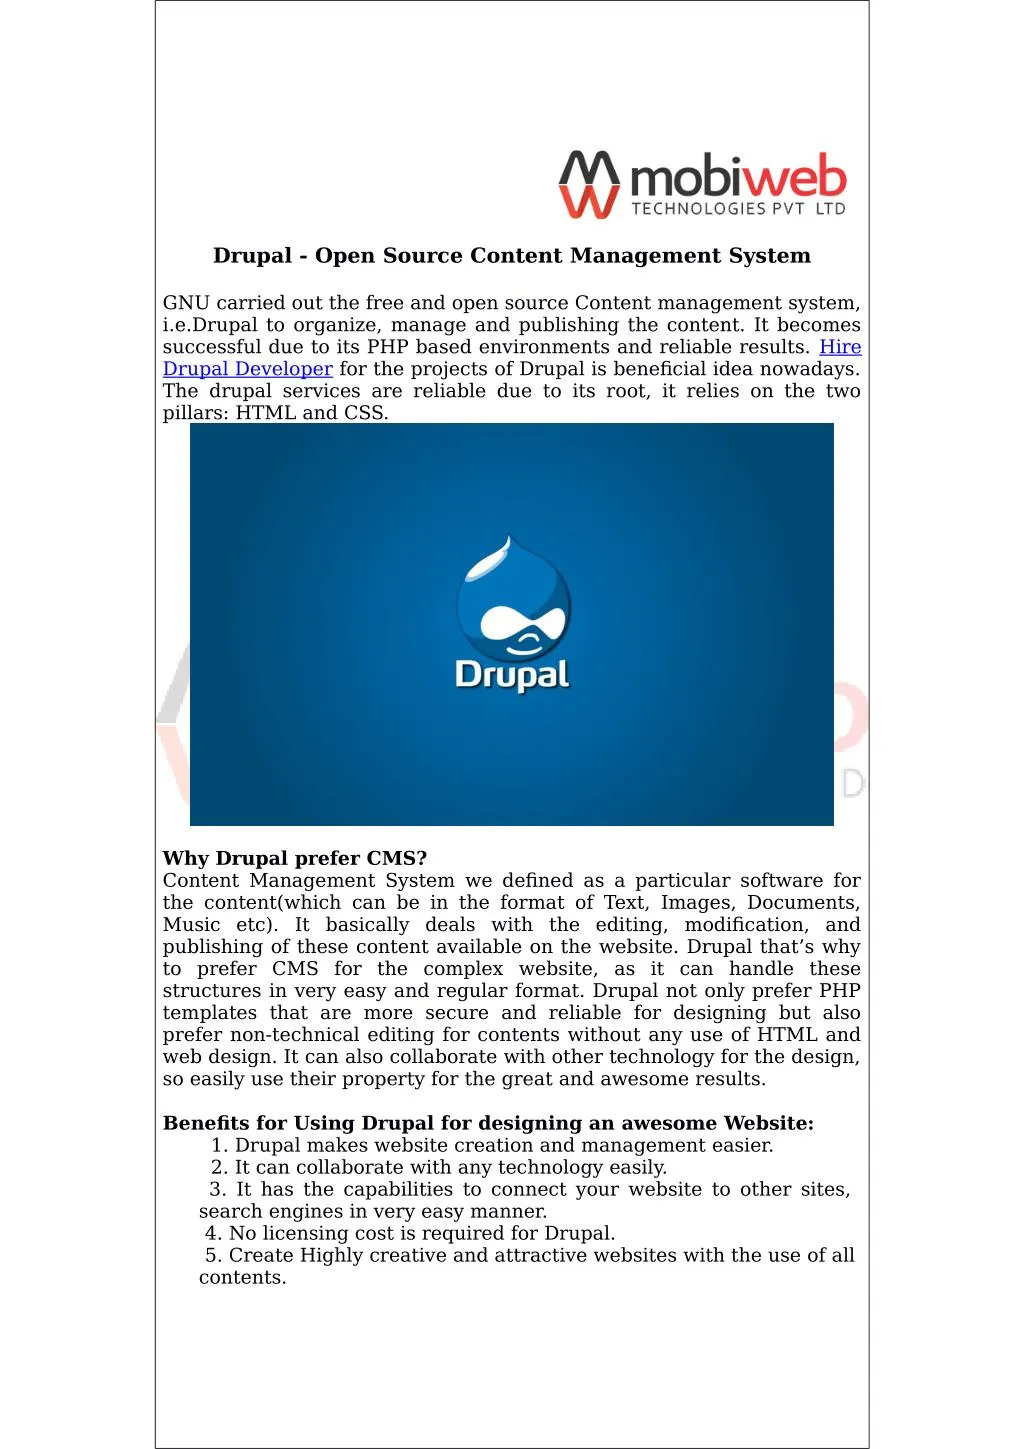 drupal open source content management system